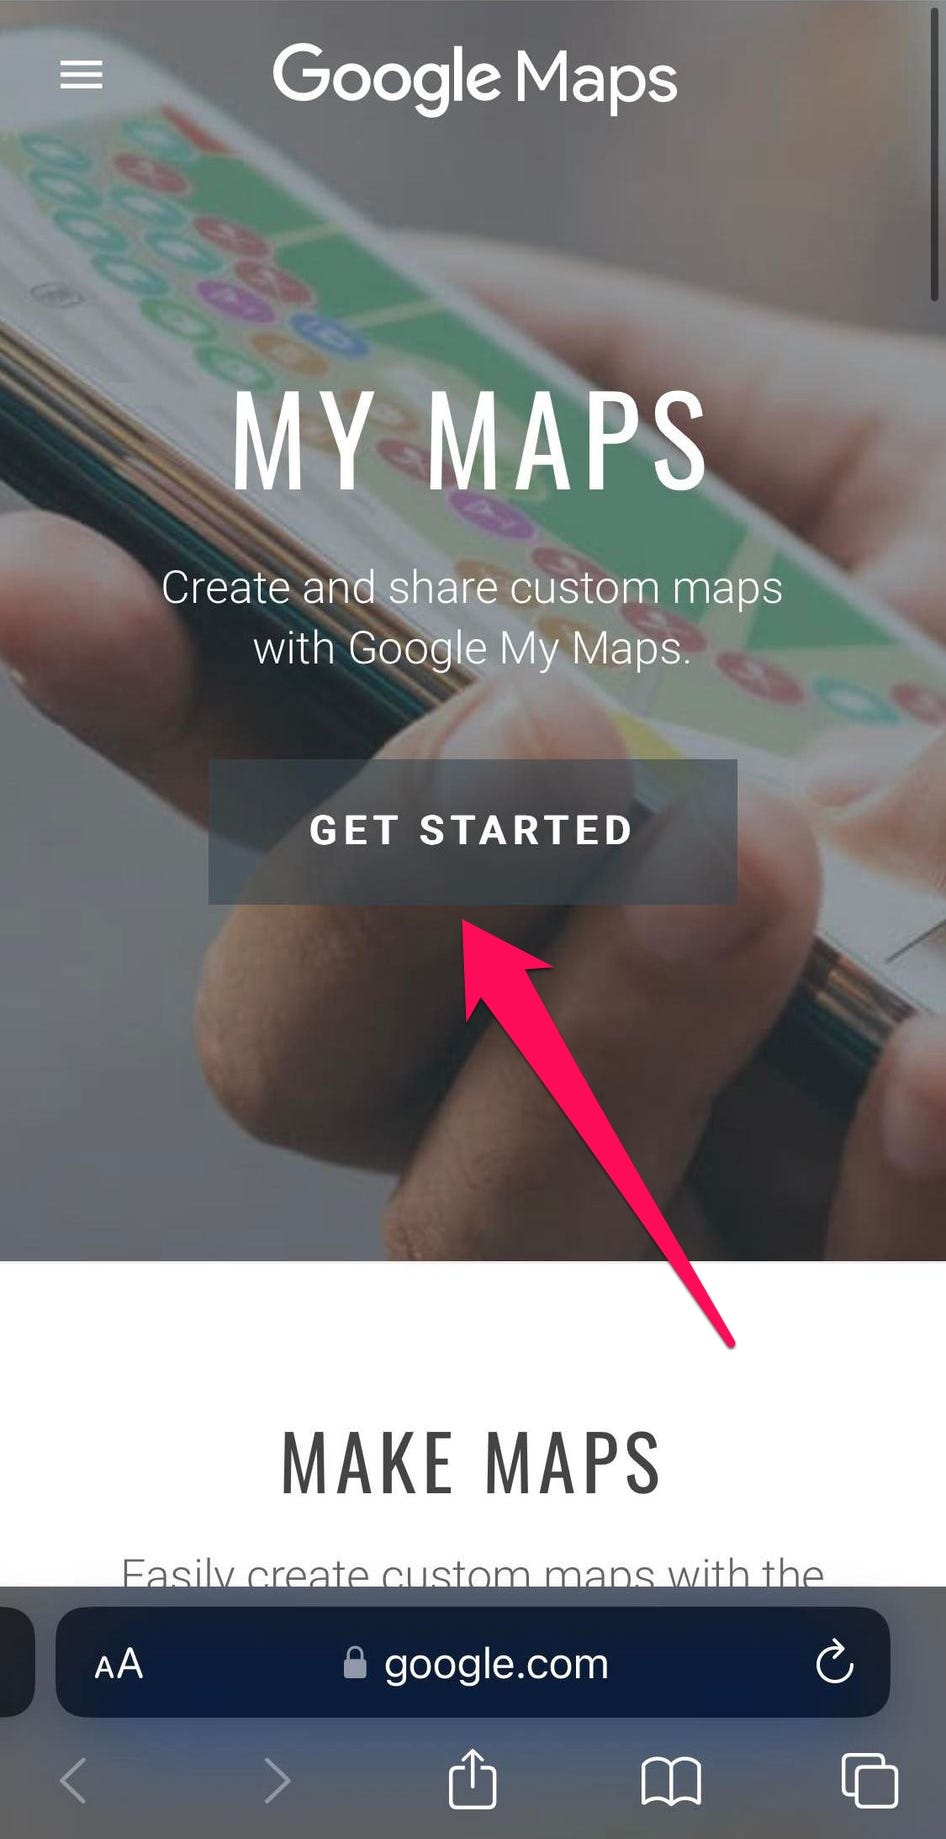 Visualizzazione mobile della pagina "Le mie mappe" su Google Maps, con una freccia che punta al pulsante "Inizia".